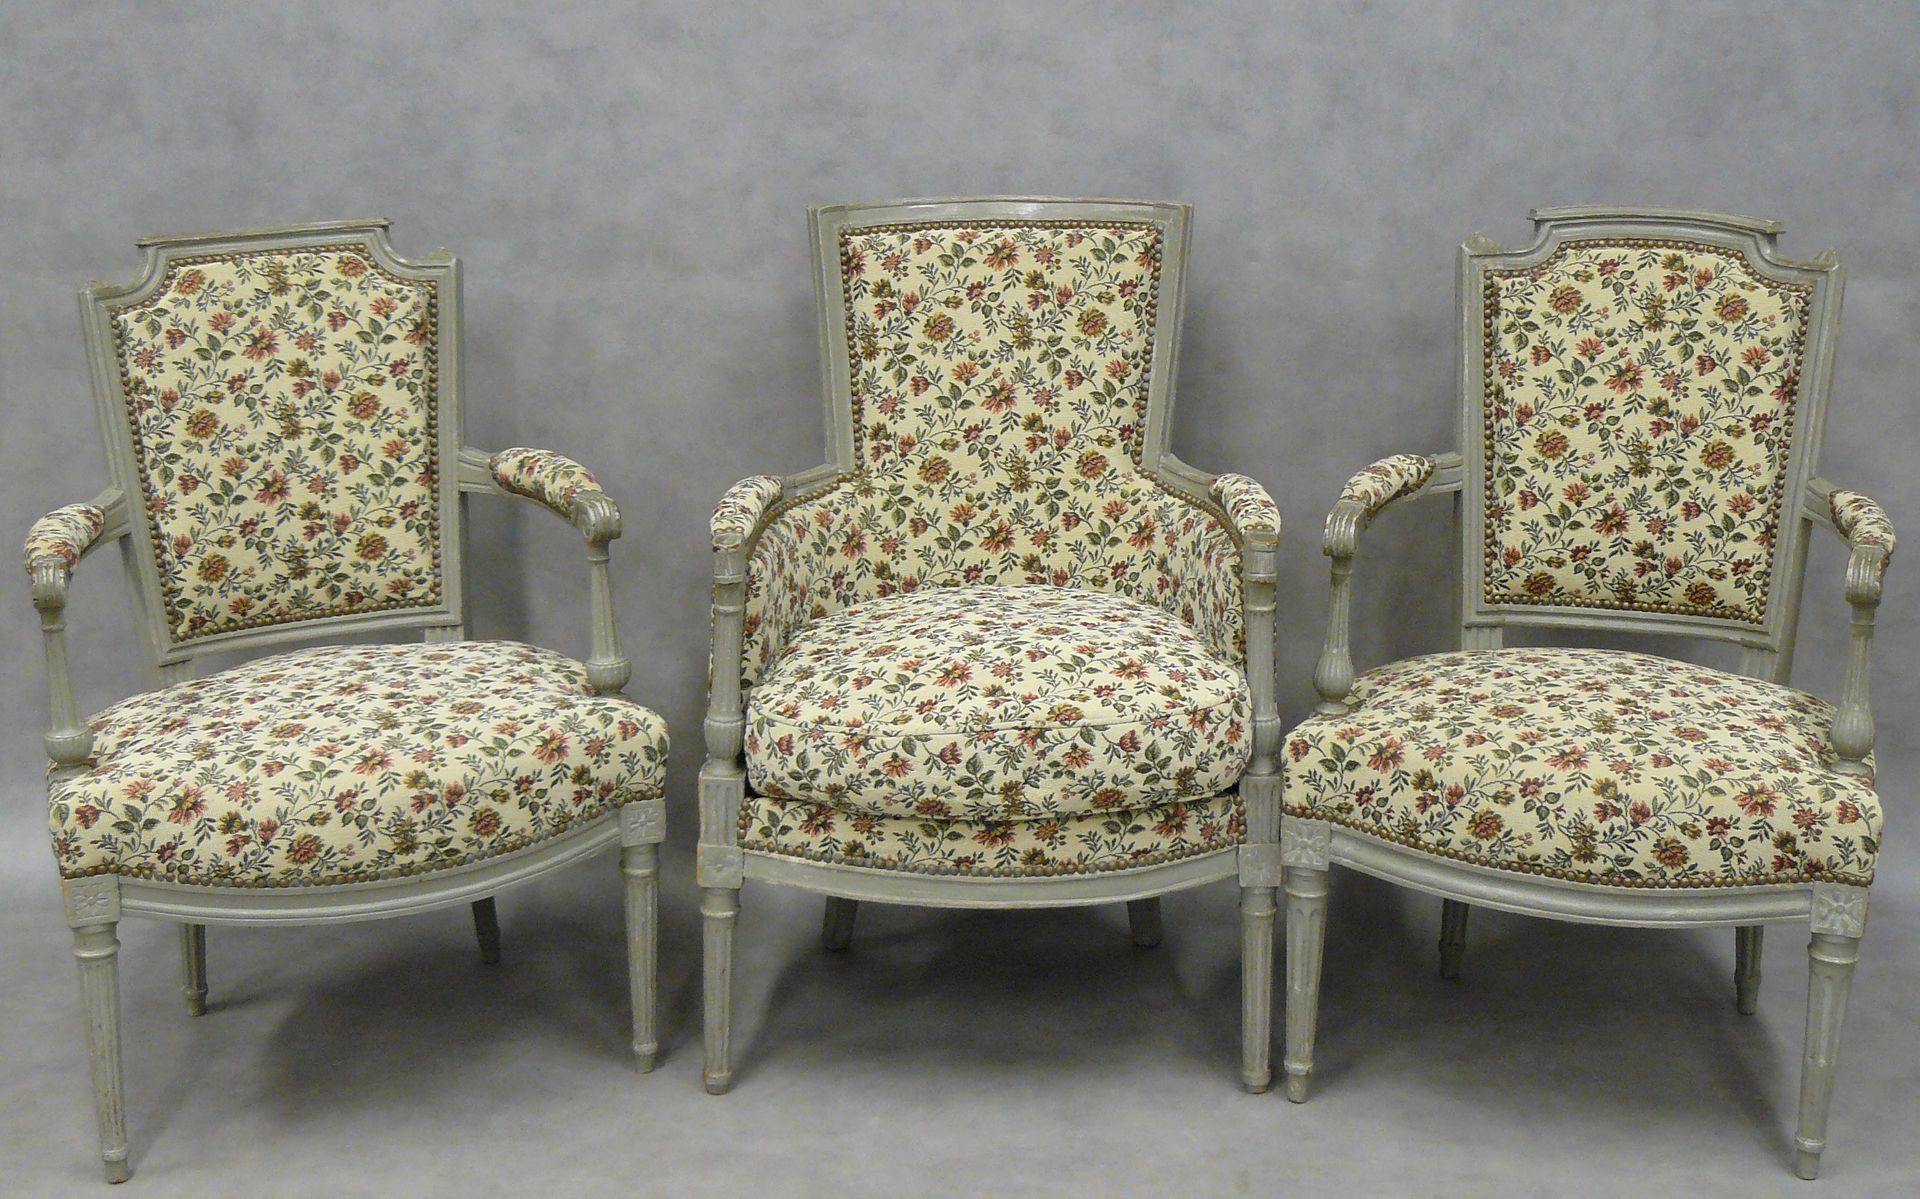 Null un sillón y dos cabriolés estilo Luis XVI lacados en gris, tapicería floral